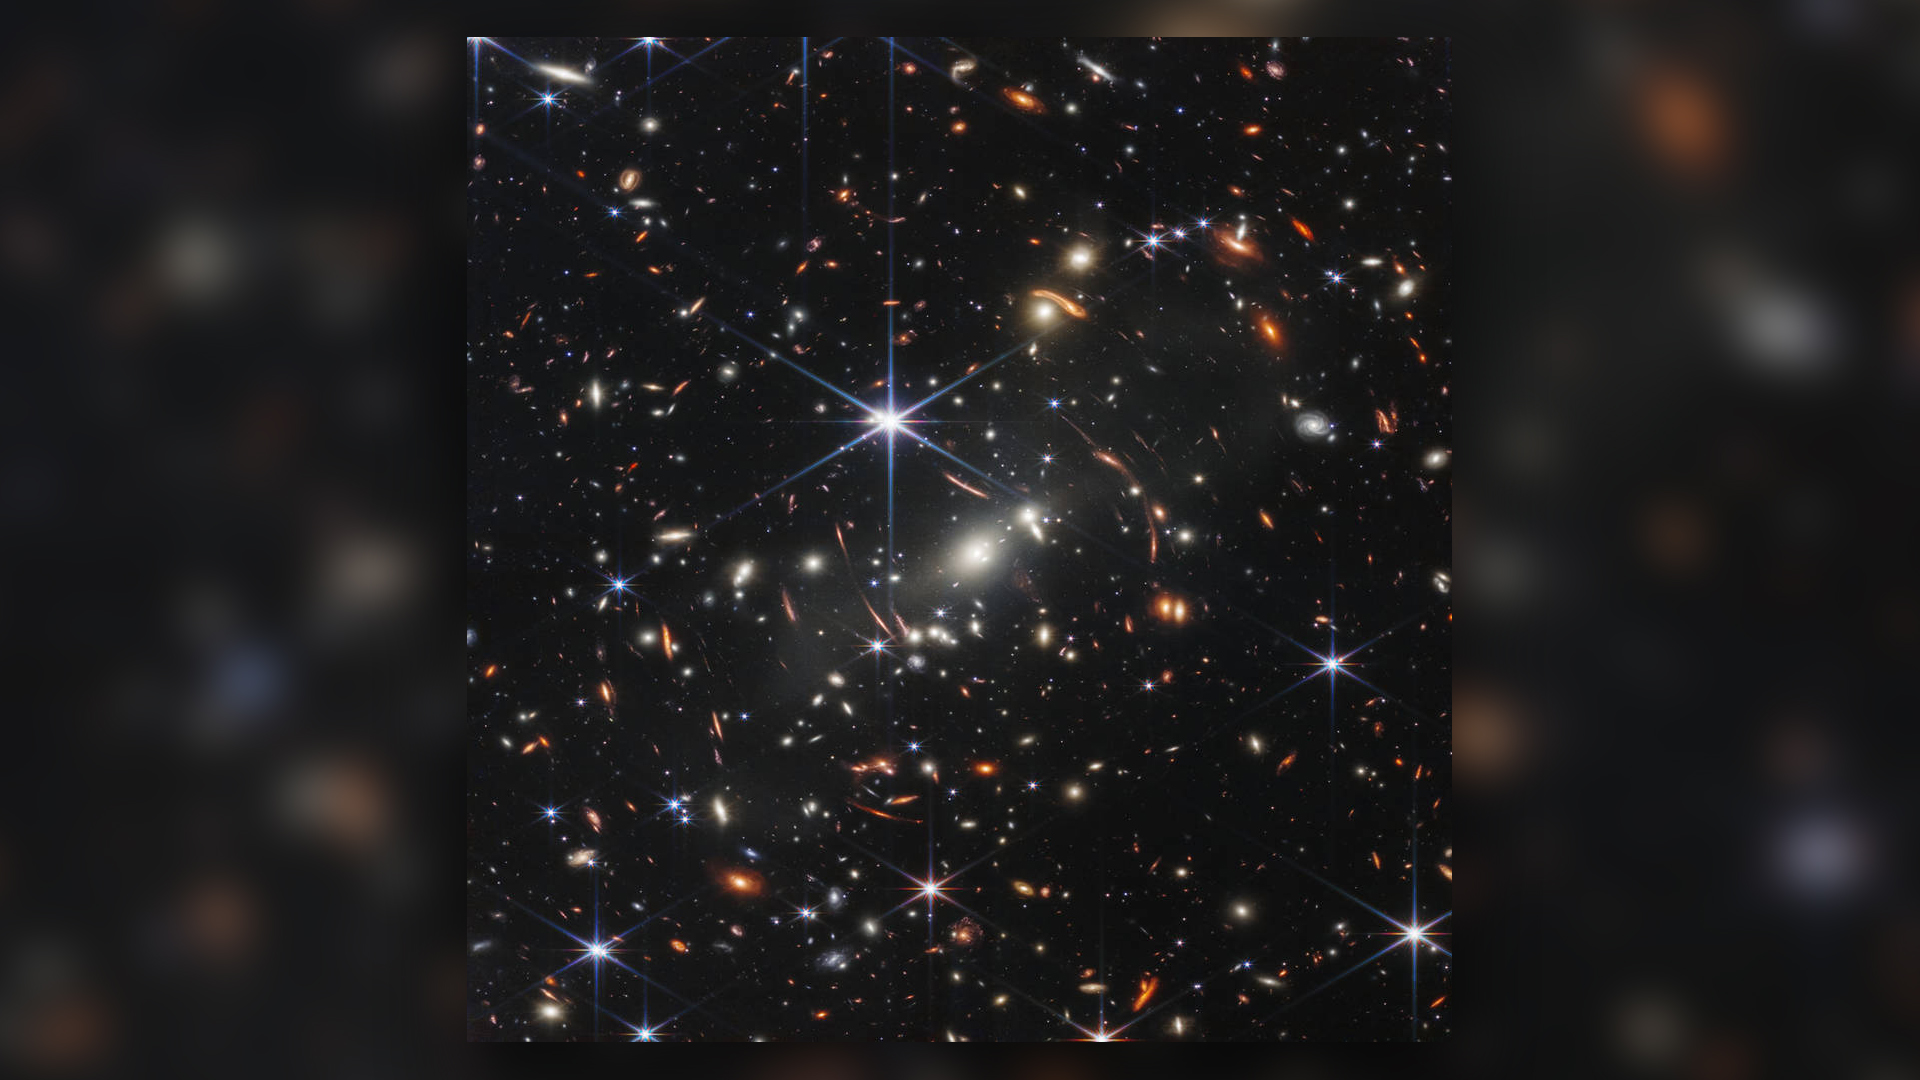 Космическият телескоп Джеймс Уеб на НАСА създаде най-дълбокото и рязко инфрачервено изображение на далечната вселена досега.  Известно като Първото дълбоко поле на Webb, това изображение на галактически клъстер SMACS 0723 прелива от детайли.